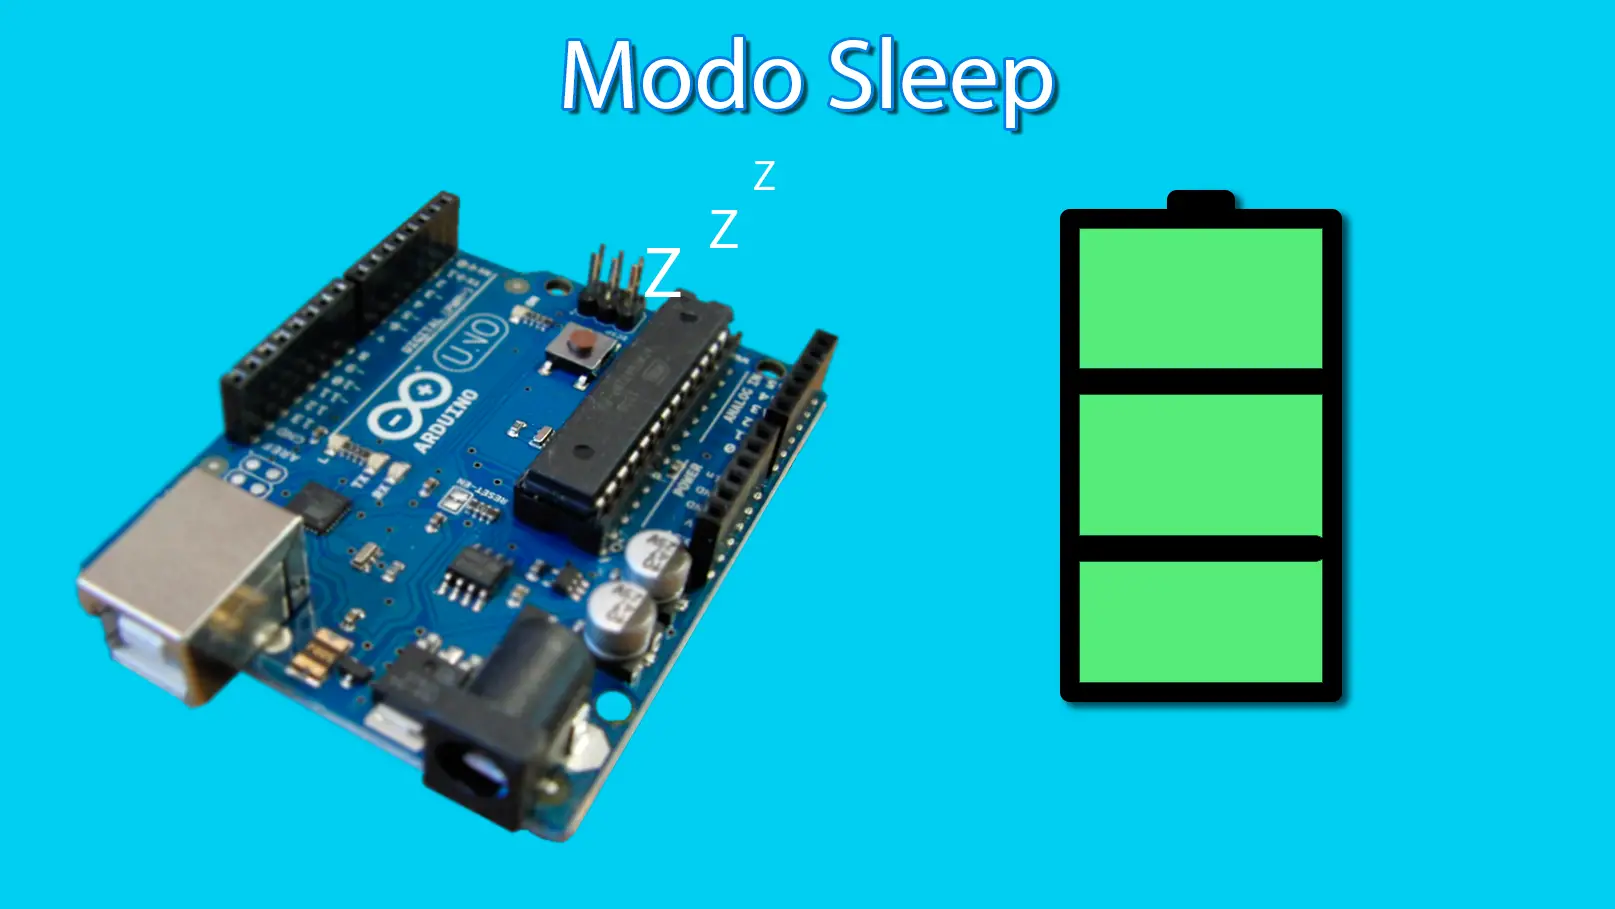 modo sleep do arduino